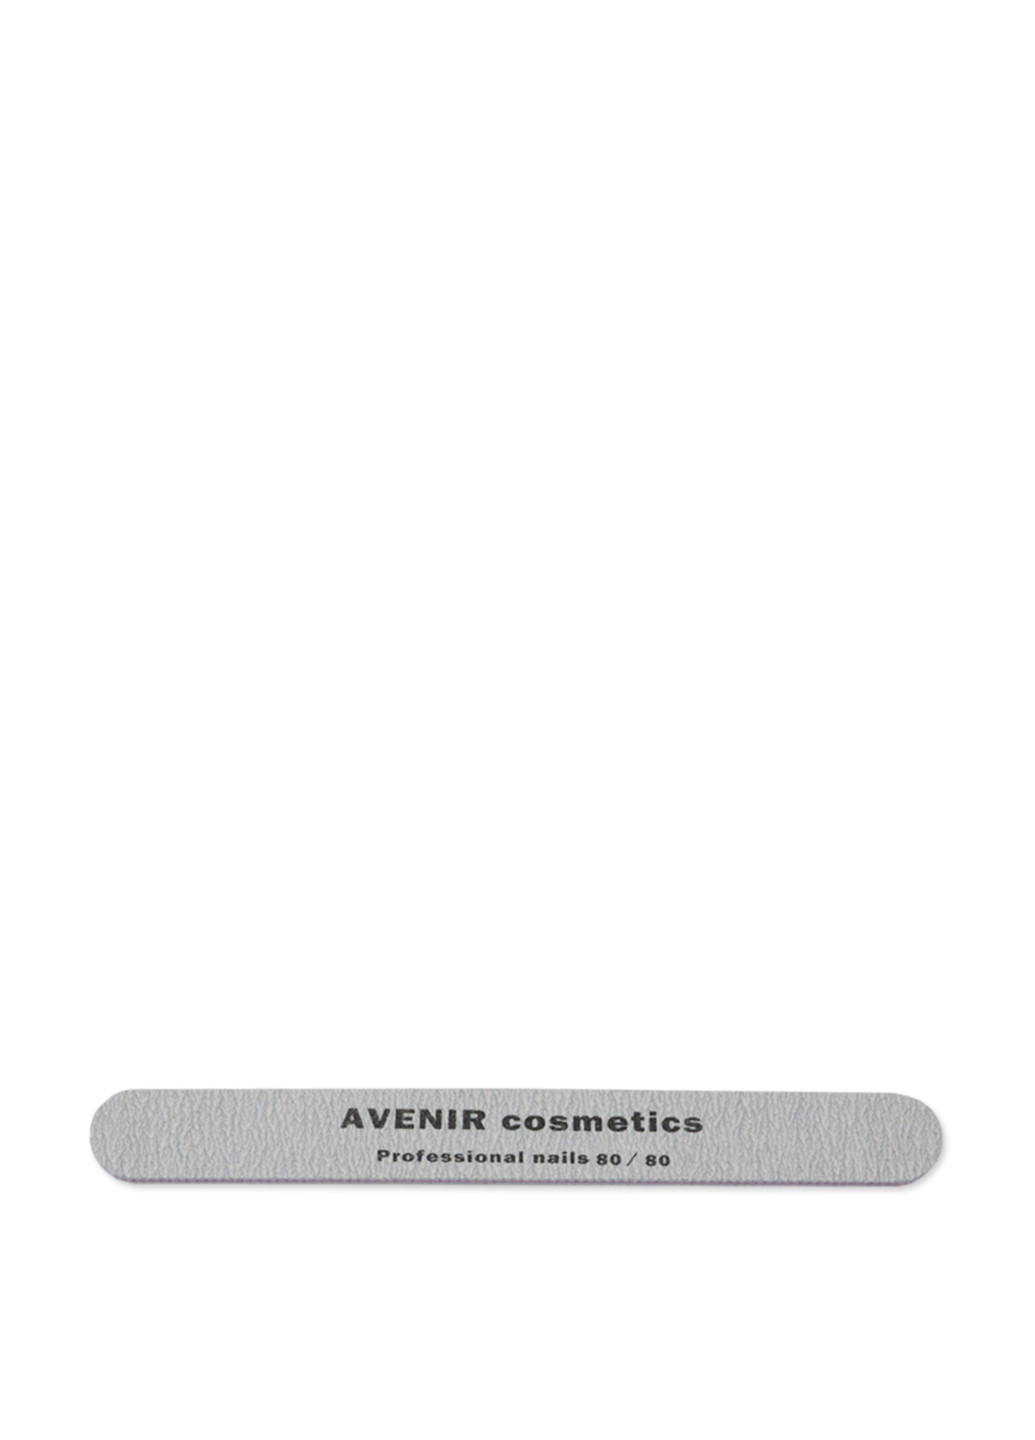 Пилка для ногтей профессиональная 80/80 AVENIR Cosmetics (59707348)